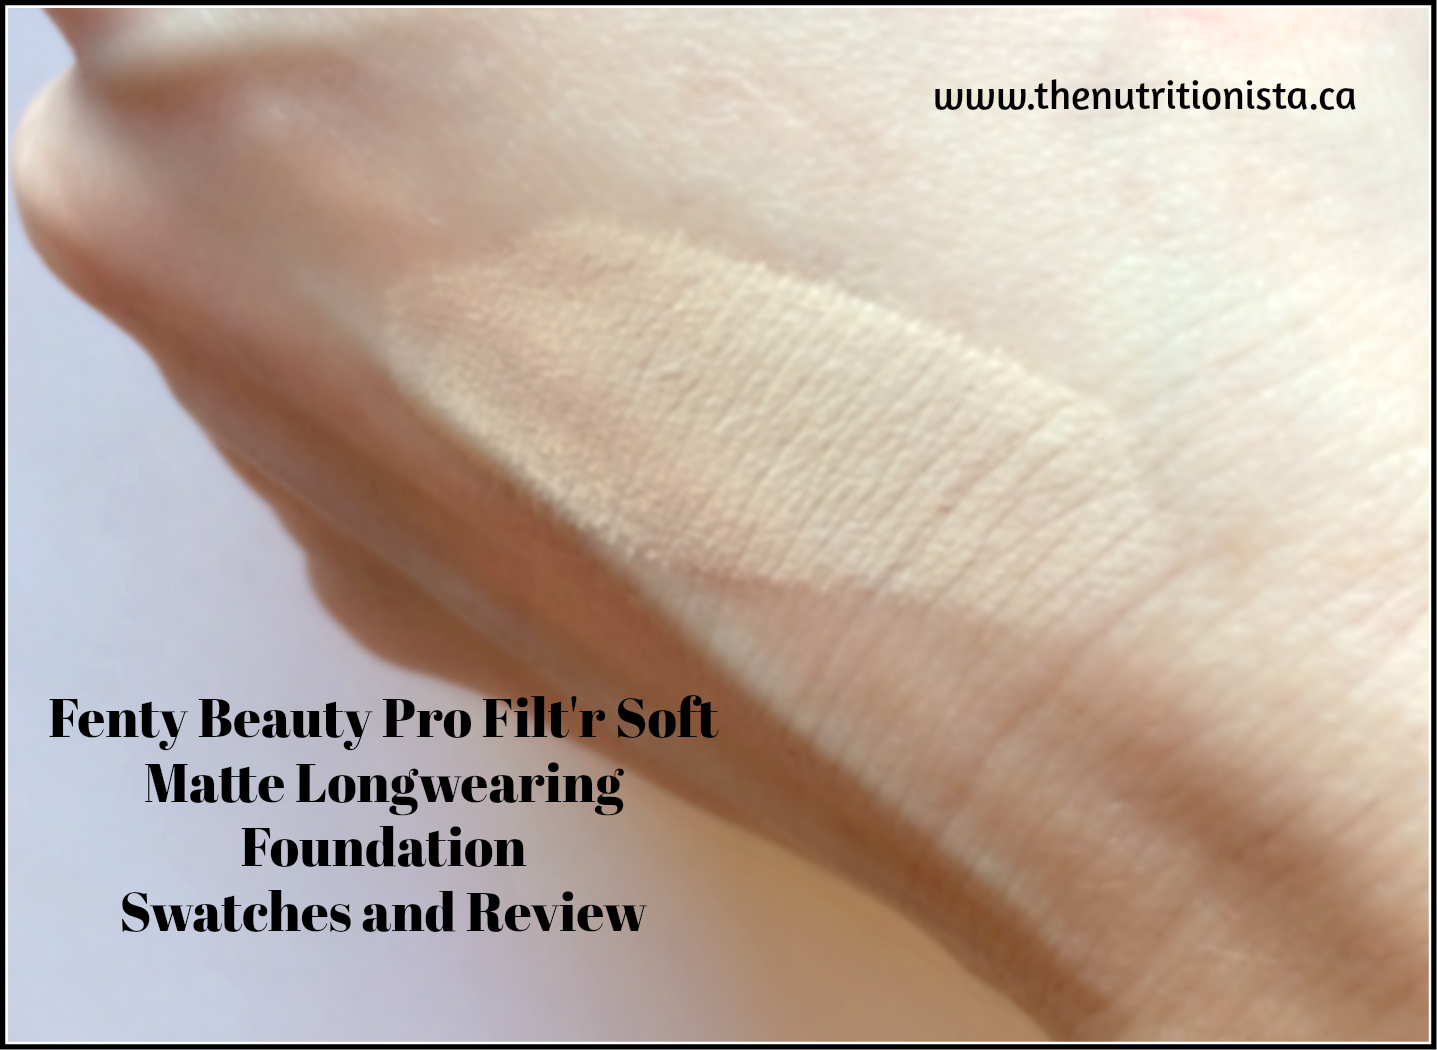 Fenty Beauty by Rihanna Pro Filt'r Soft Matte Longwear Foundation - Reviews